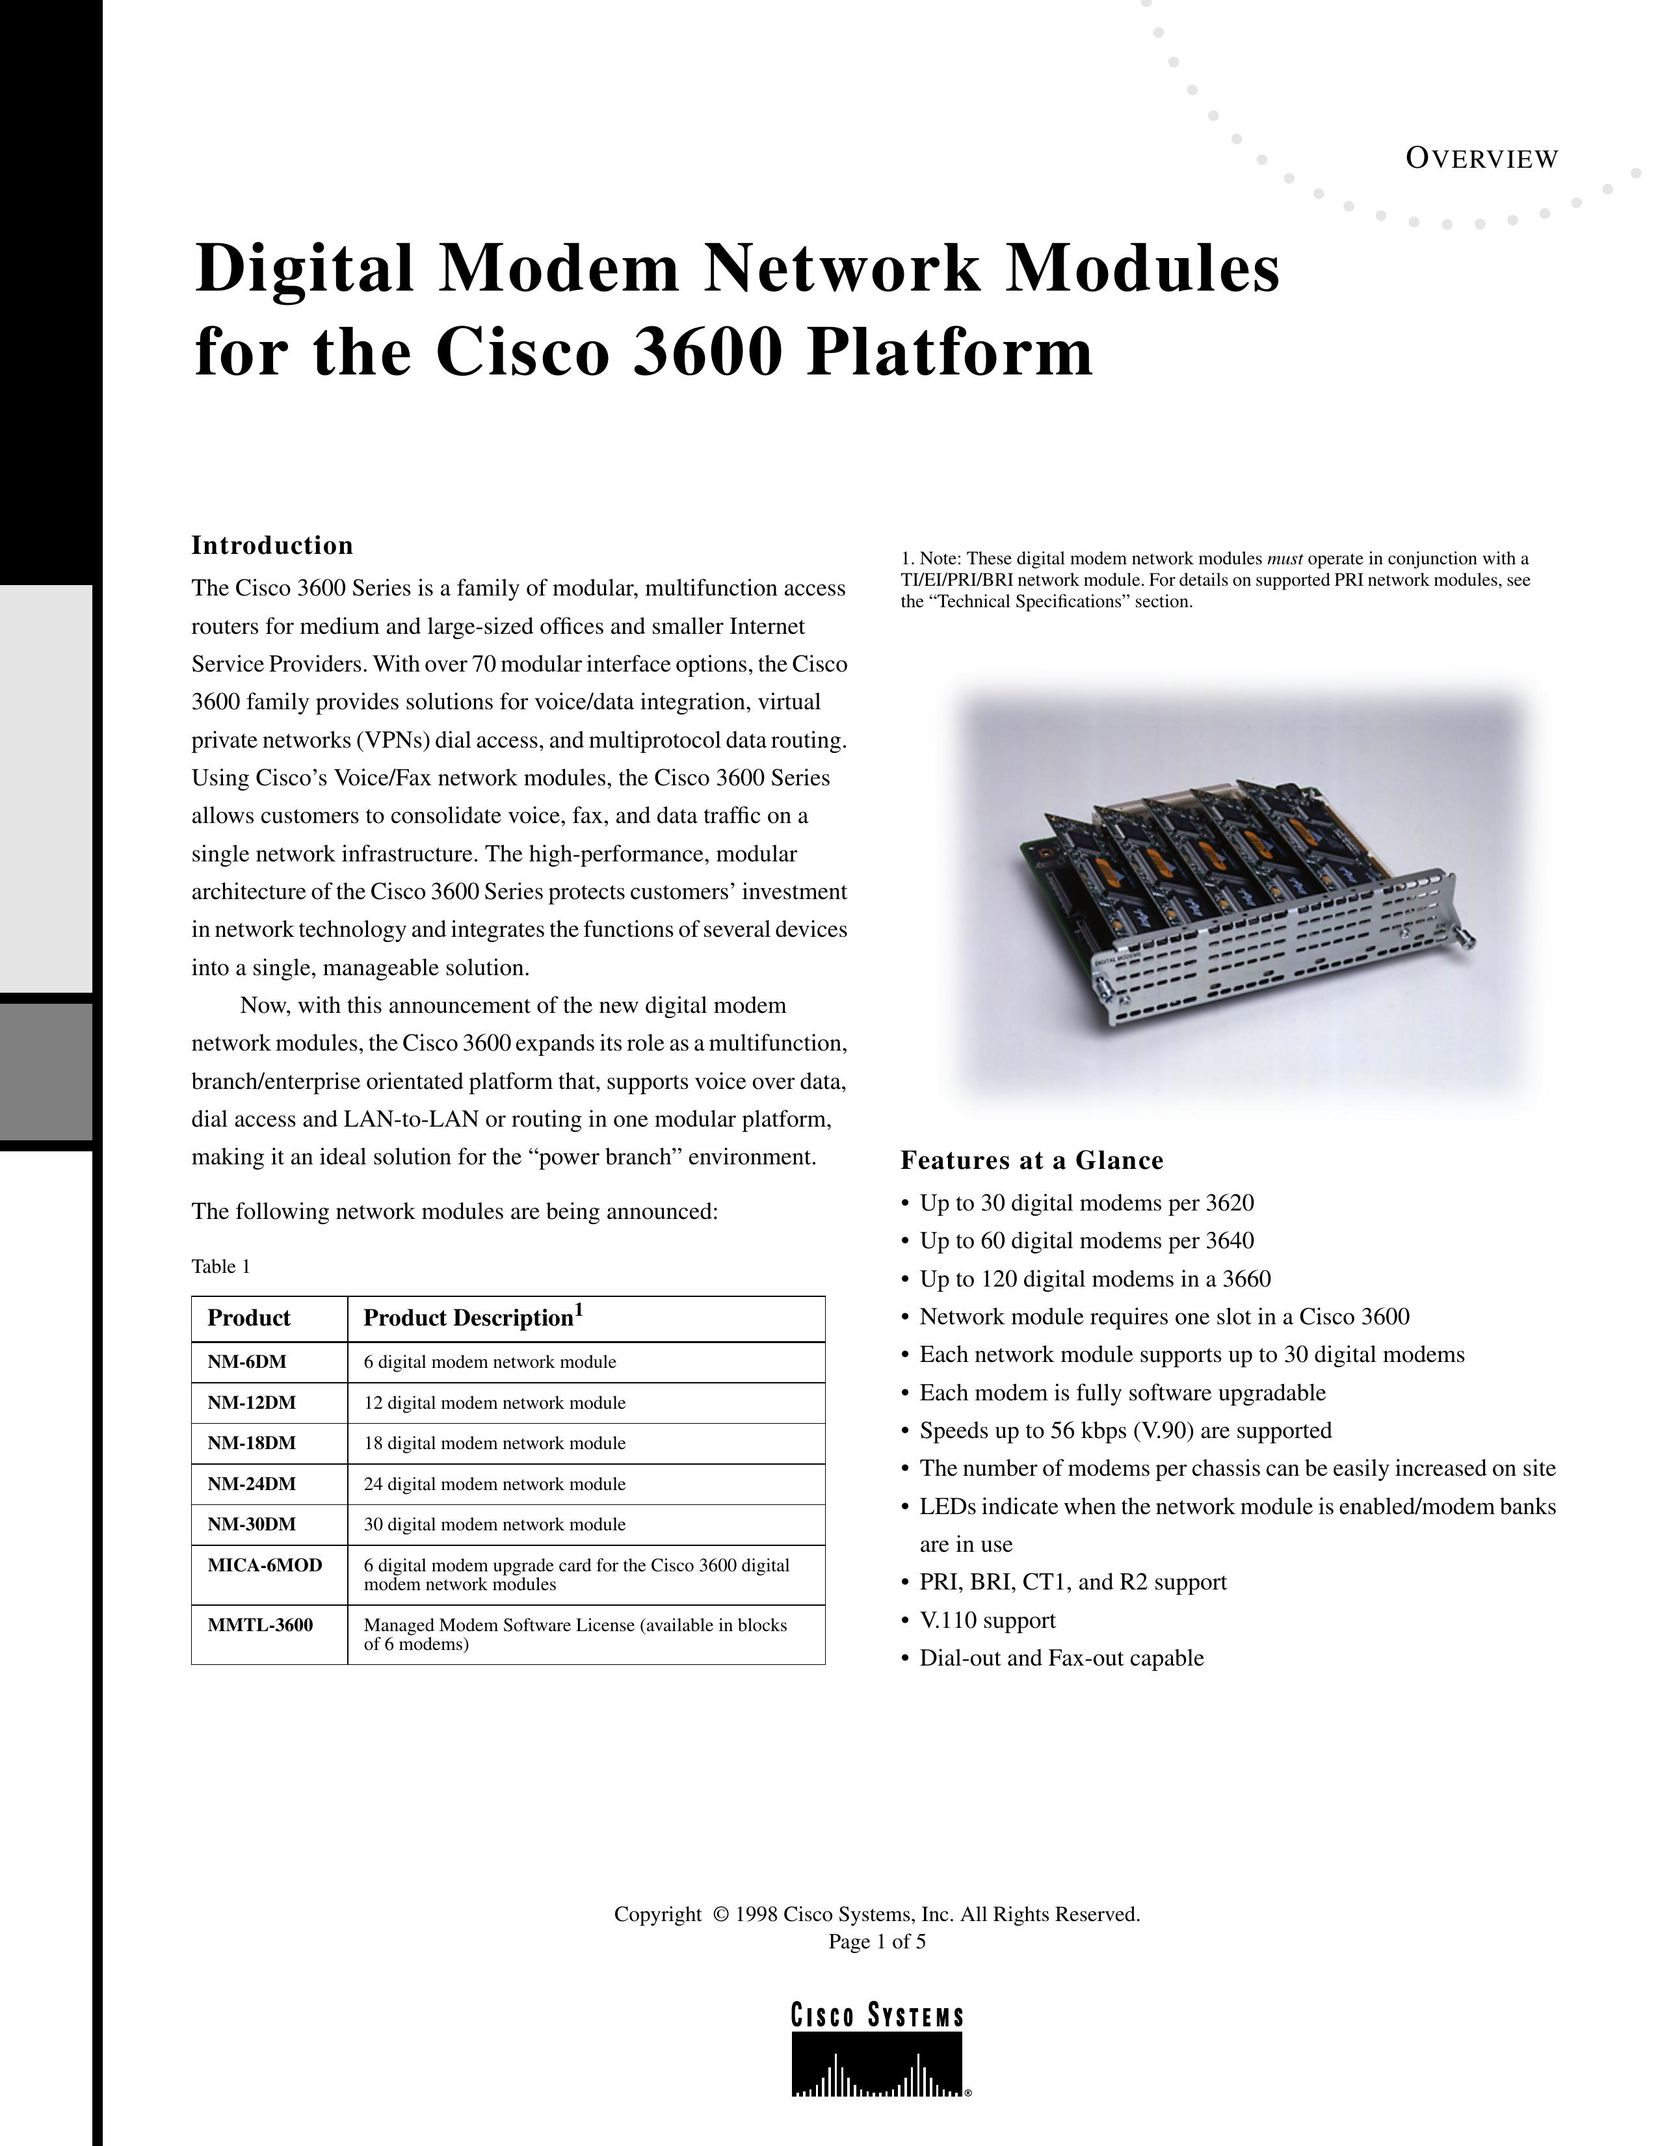 Cisco Systems NM18DM Modem User Manual